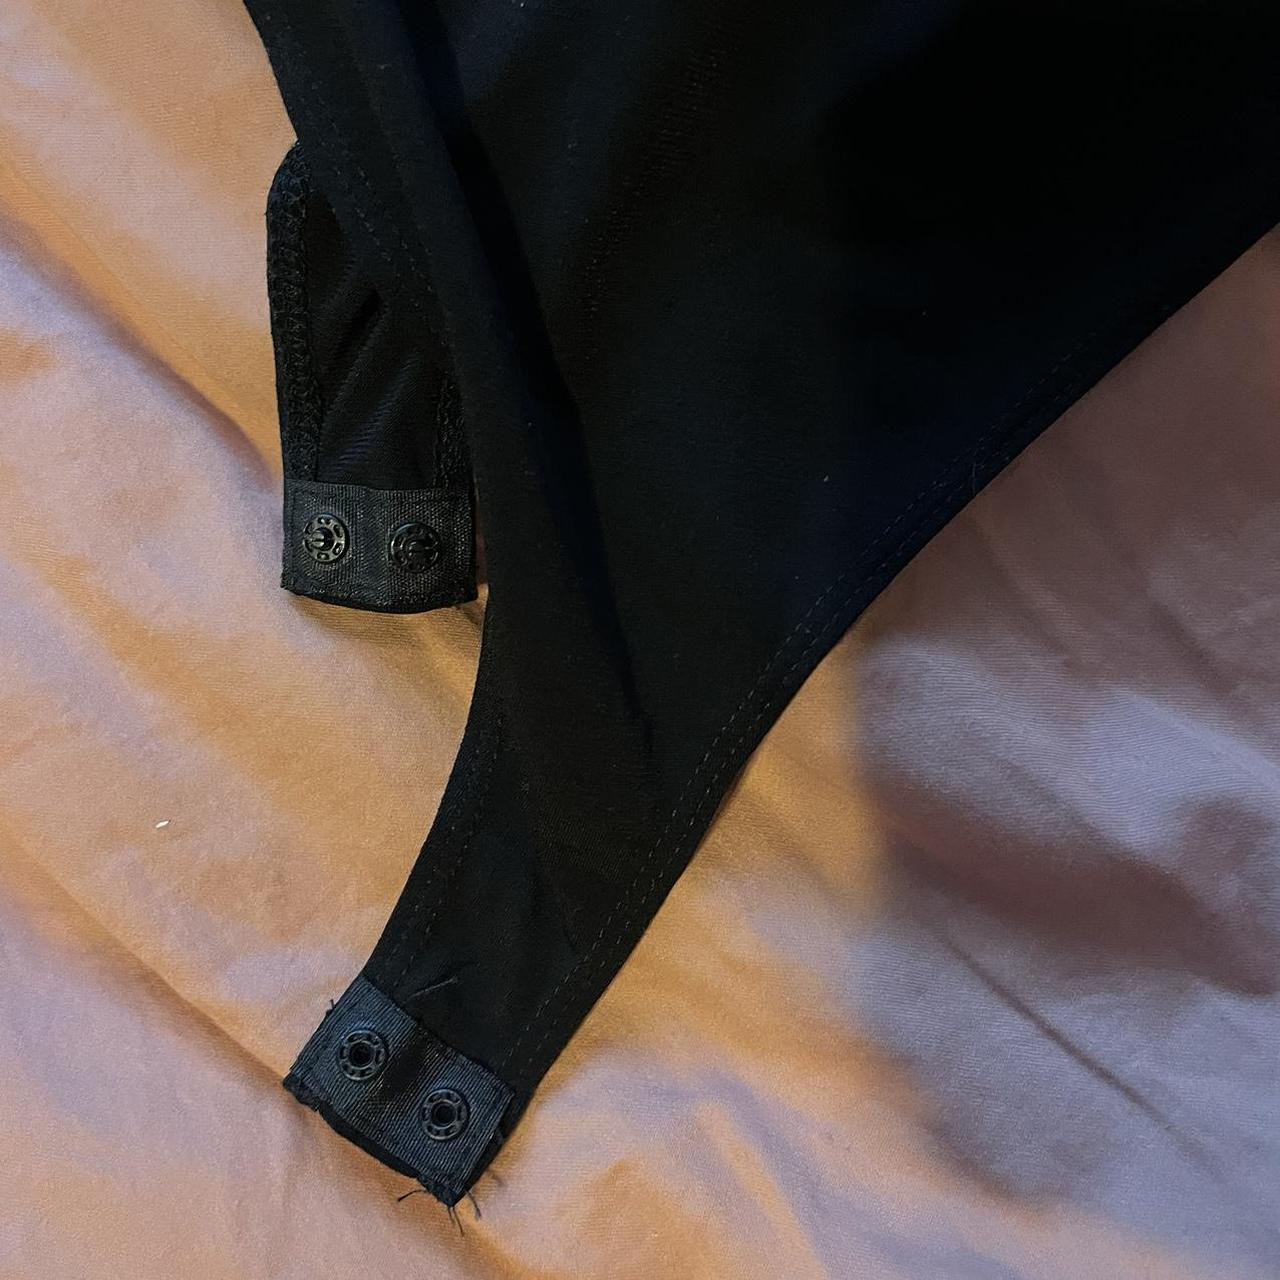 black lace tank top body suit 🖤 adjustable straps + - Depop